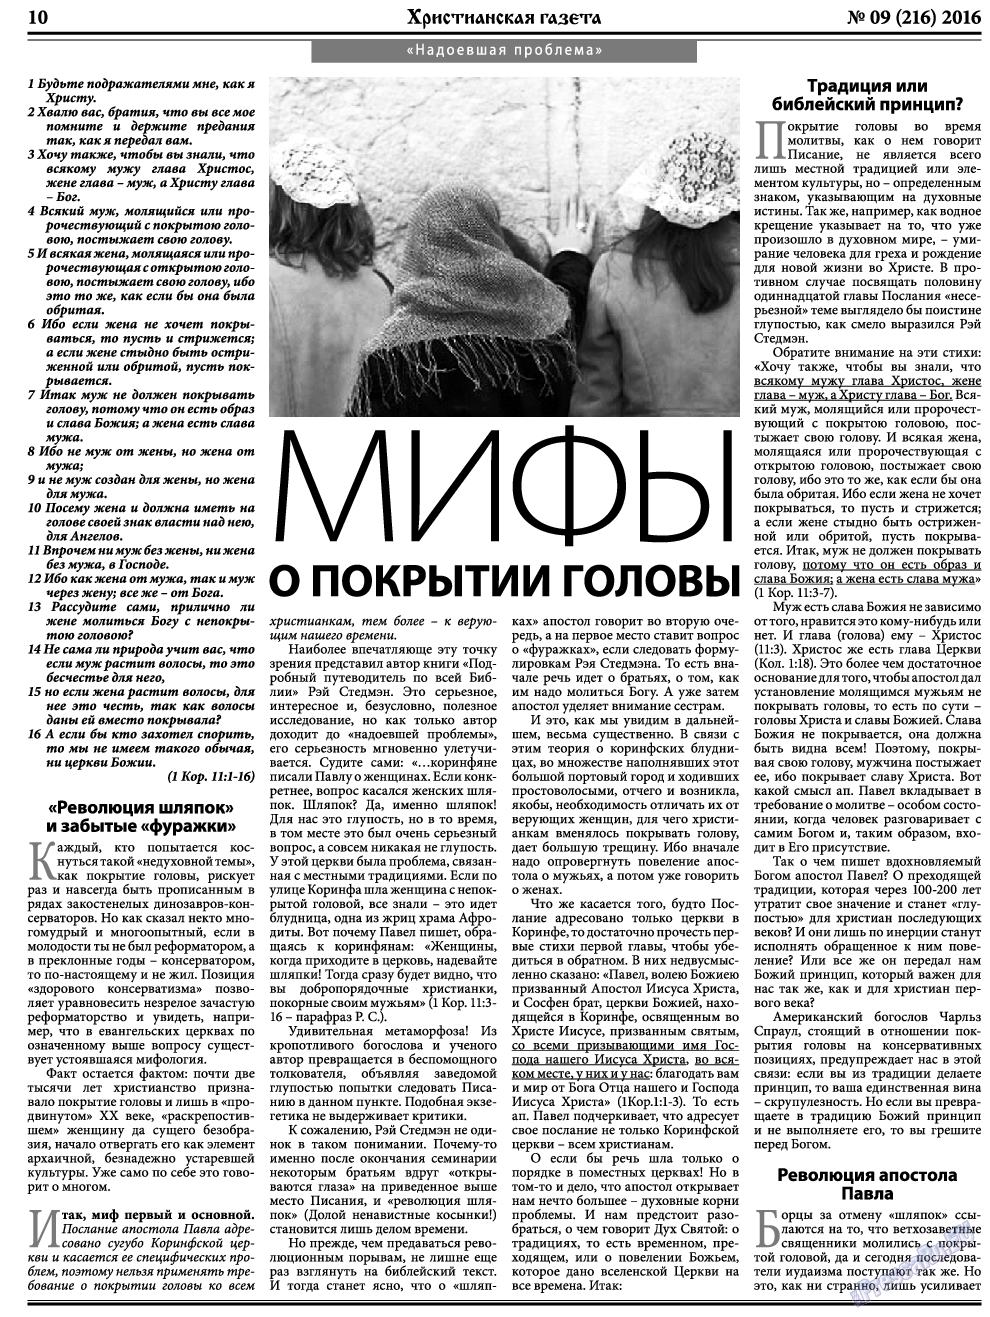 Христианская газета, газета. 2016 №9 стр.10